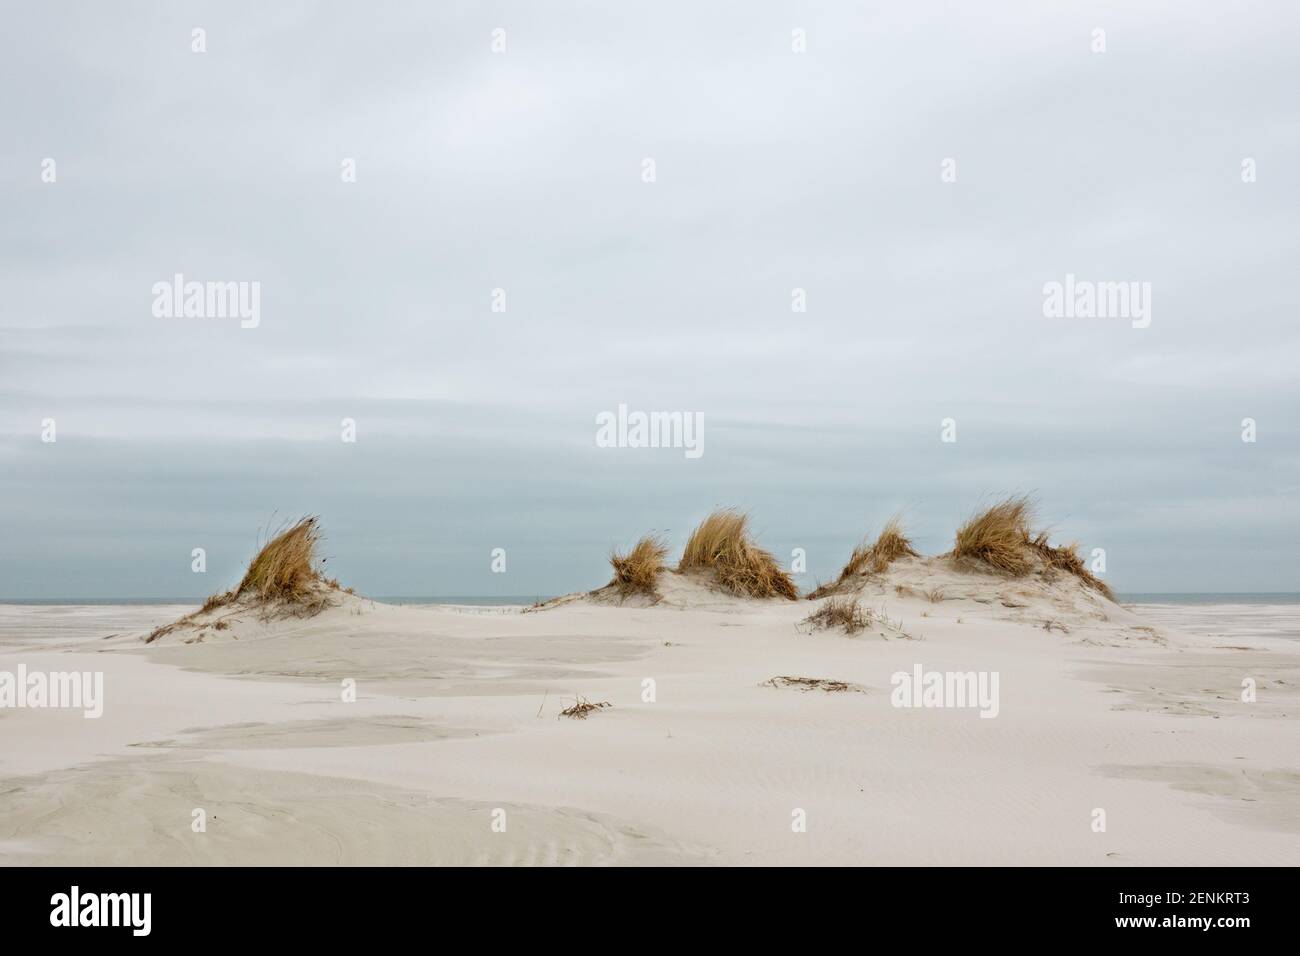 Dünenbildung: Kleine Dünen mit Marram Gras an einem windigen und weiten Strand unter einem grauen und bewölkten Himmel gewachsen Stockfoto